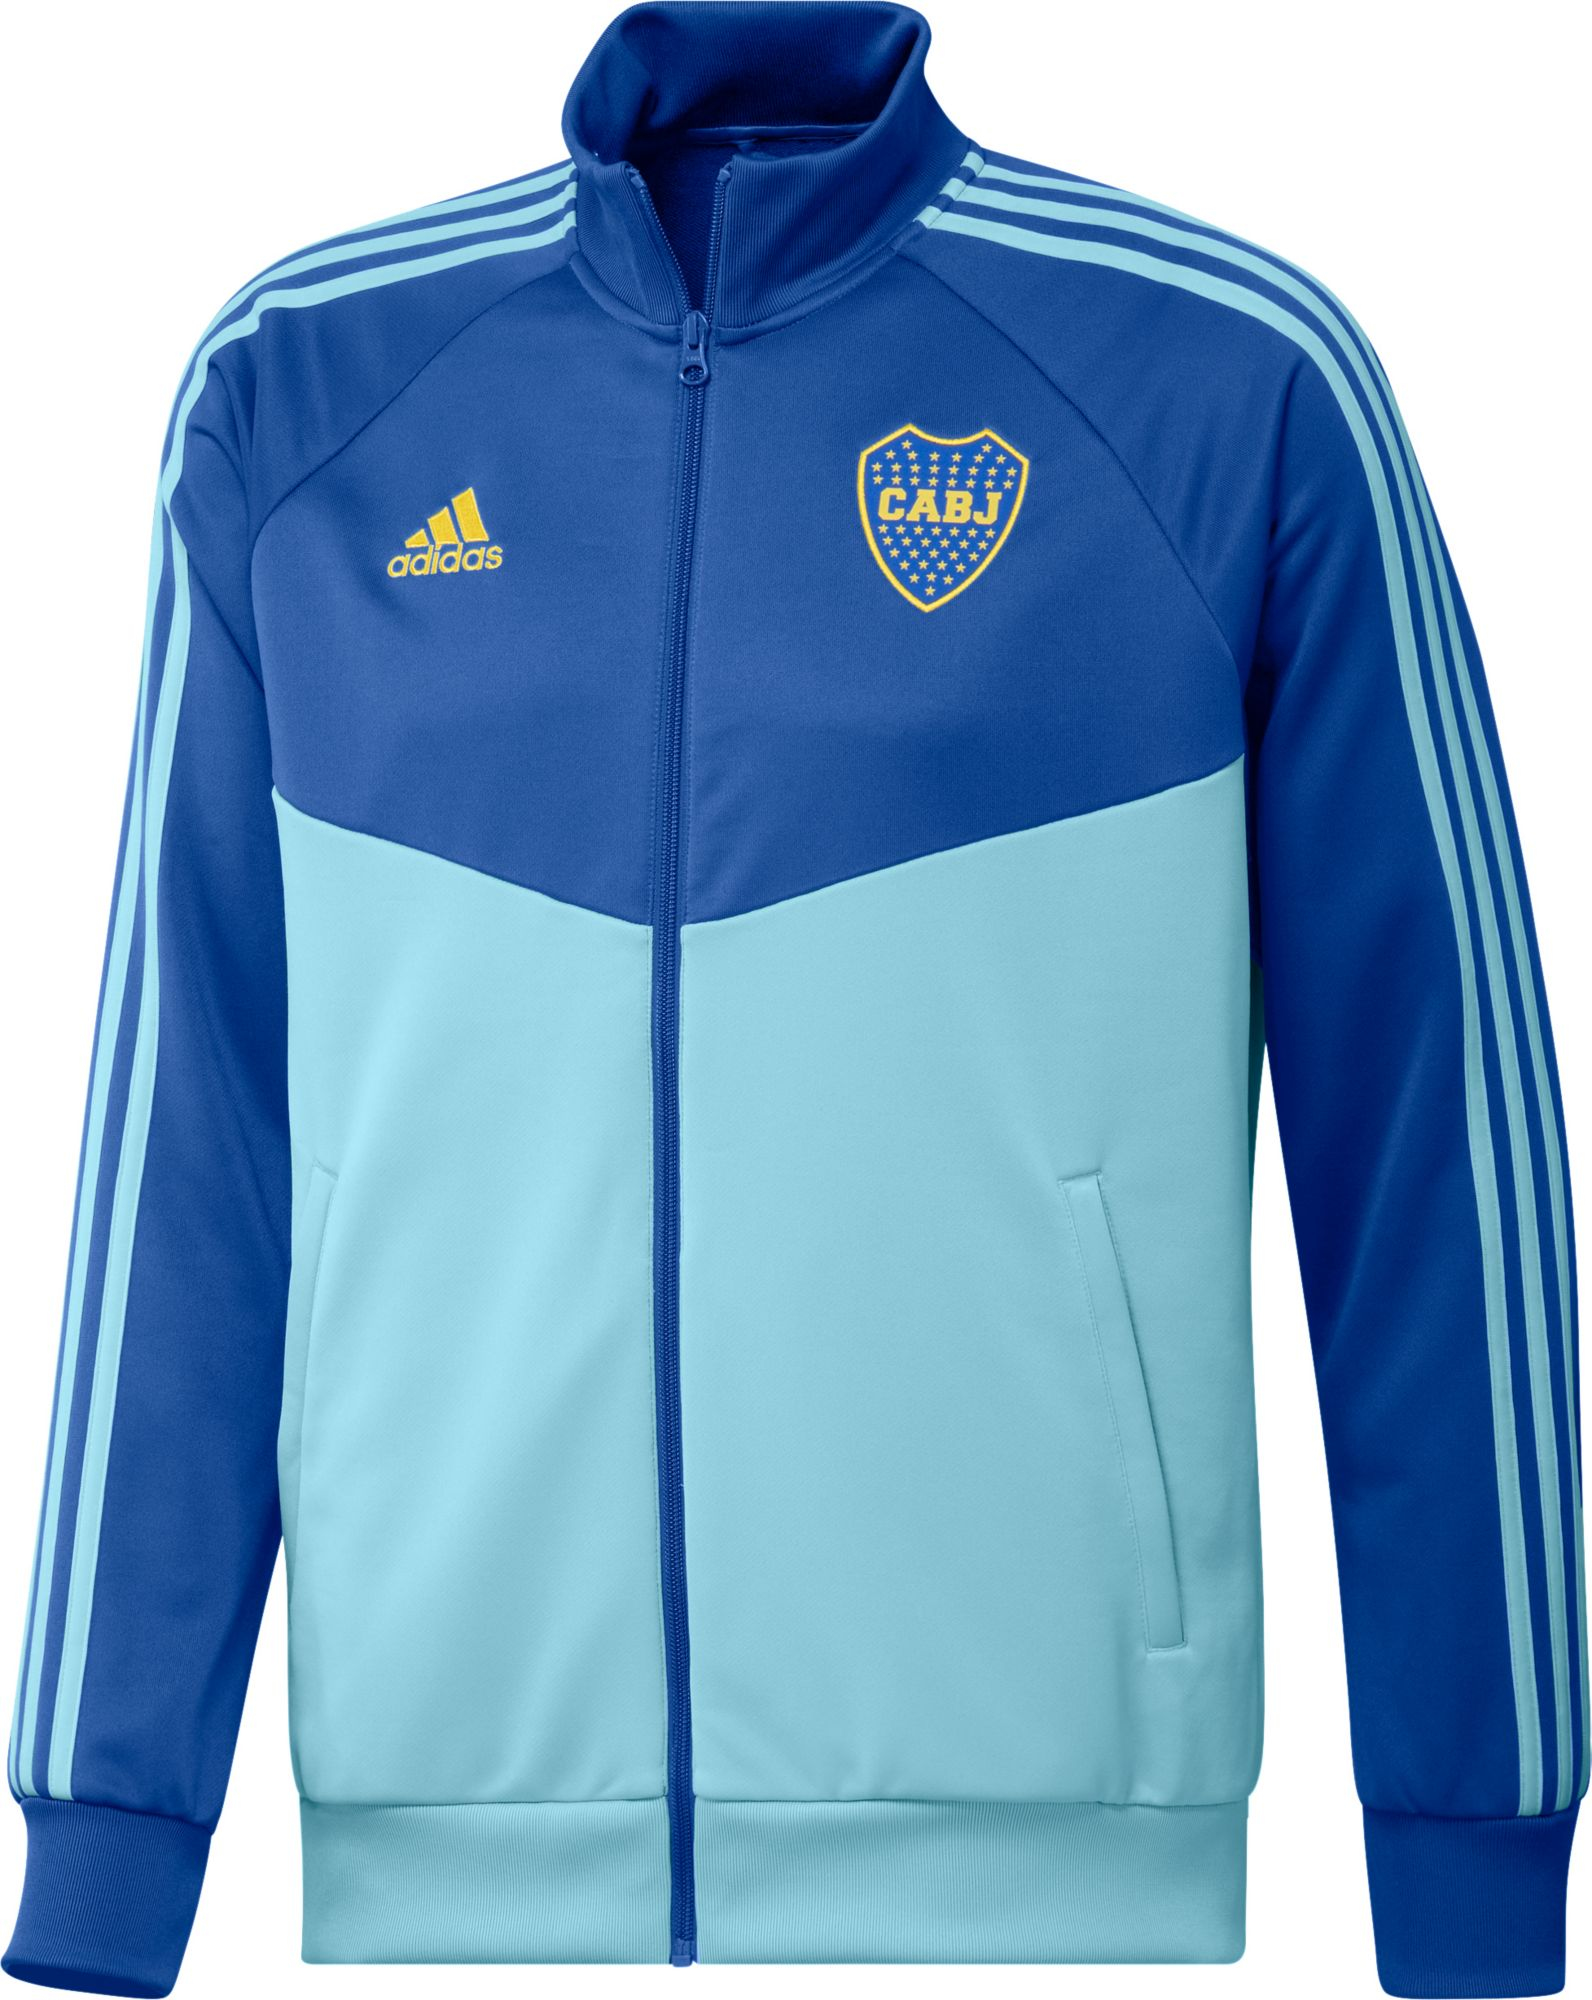 adidas Boca Juniors DNA Royal Blue Jacket, Men's, Small | Holiday Gift